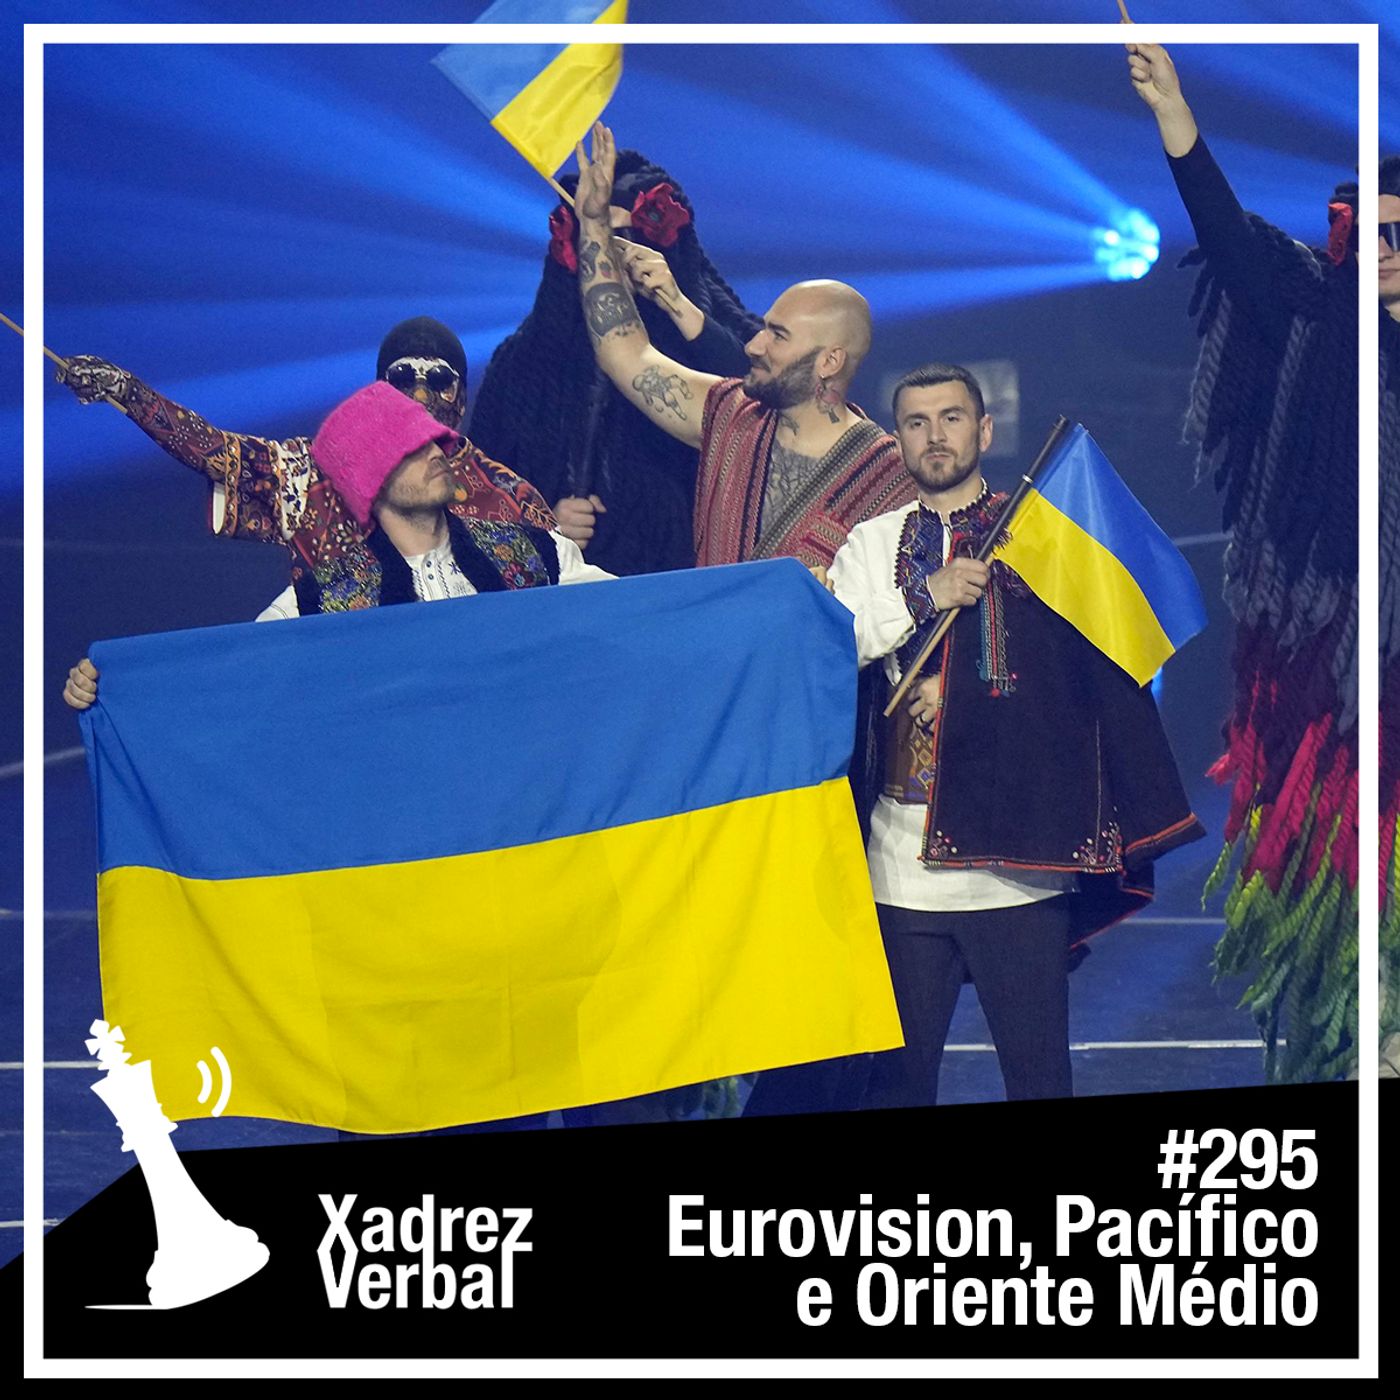 Xadrez Verbal #295 Eurovision